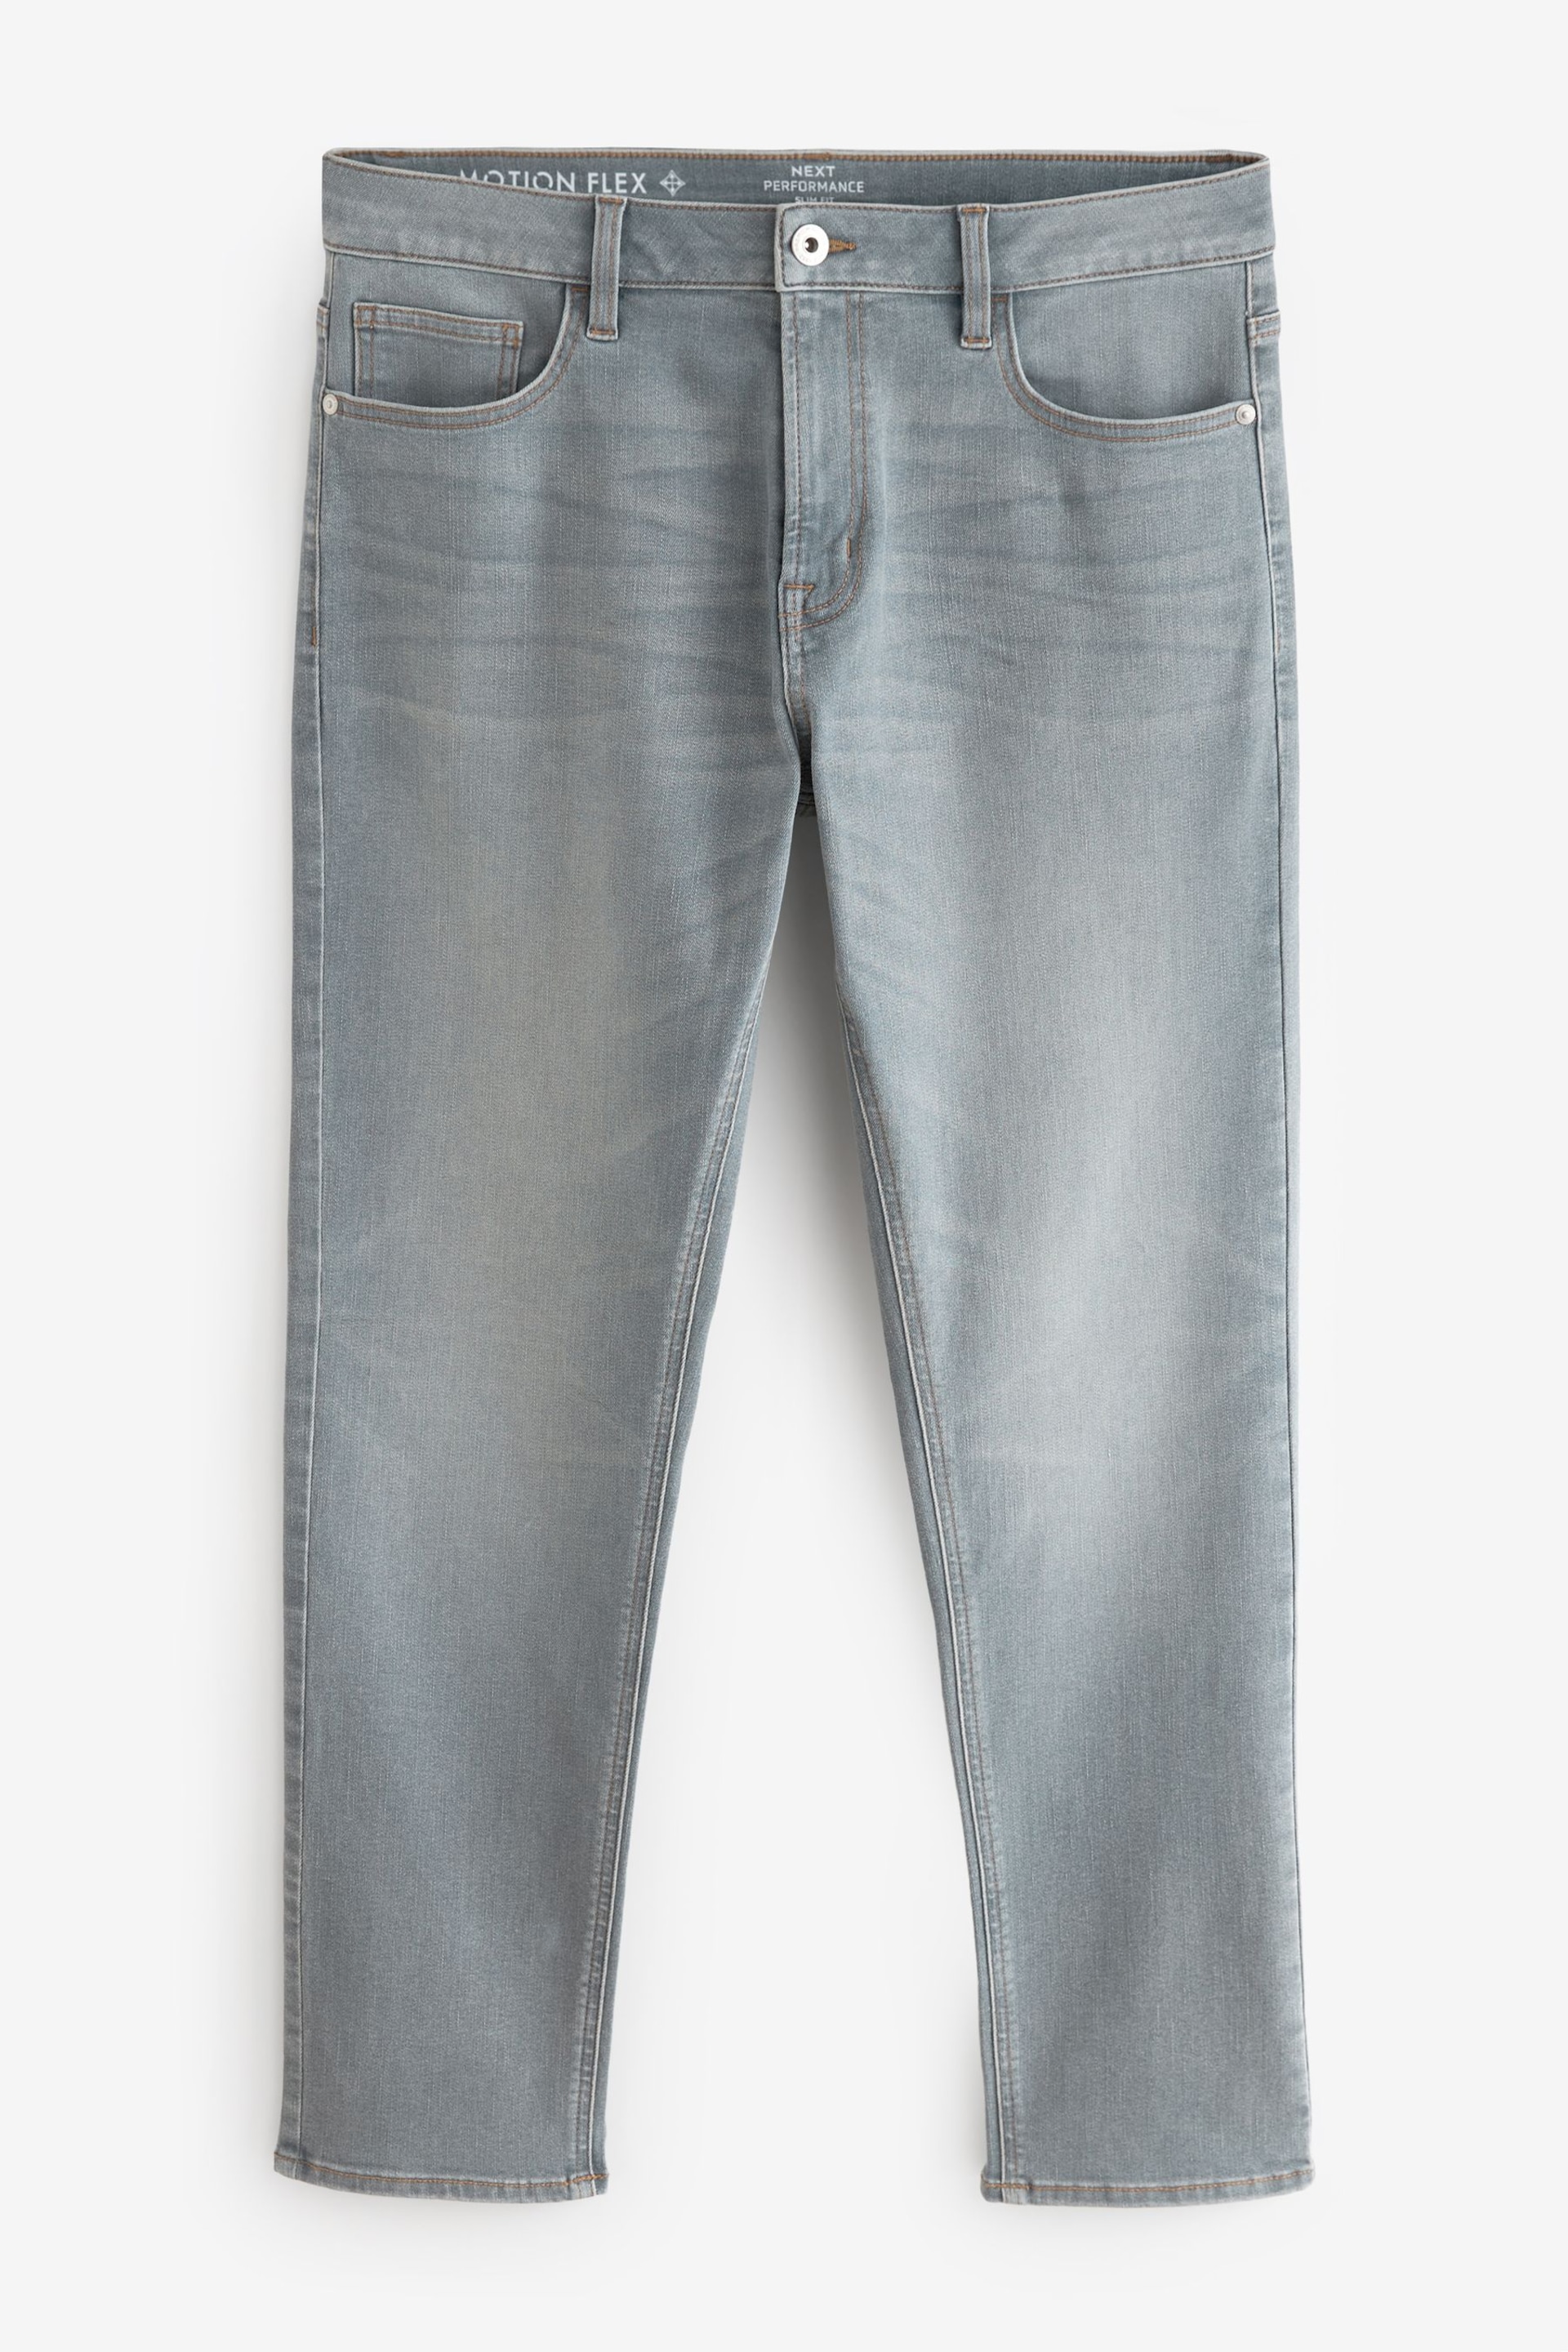 Light Grey Slim Fit Motion Flex Jeans - Image 8 of 13